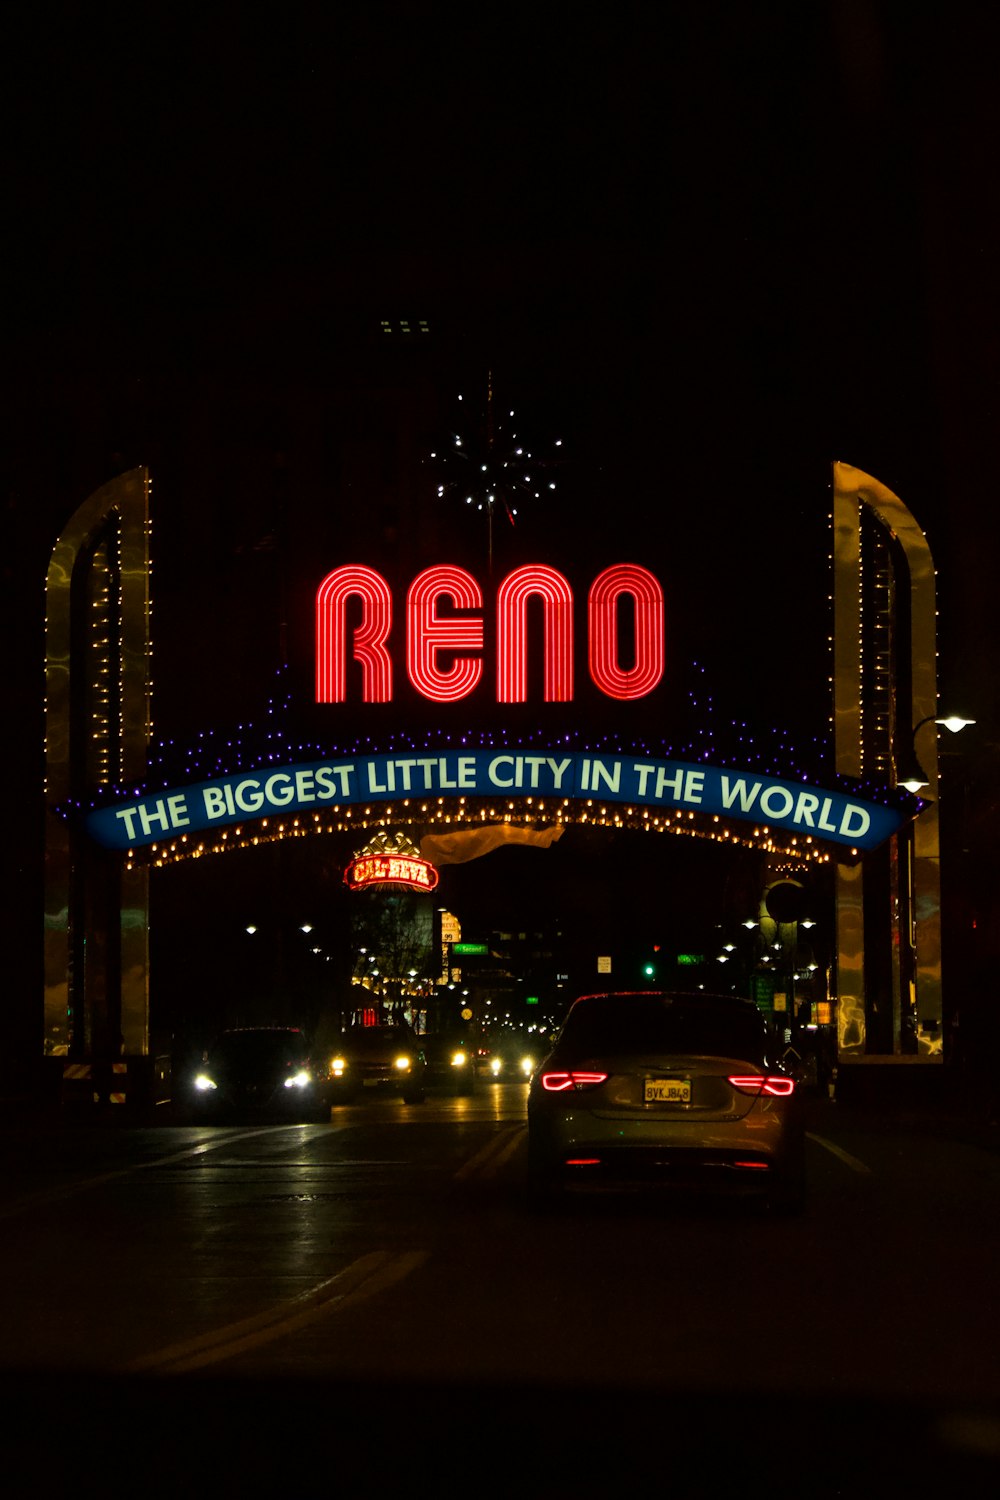 Une enseigne au néon qui indique Reno la plus grande petite ville du monde